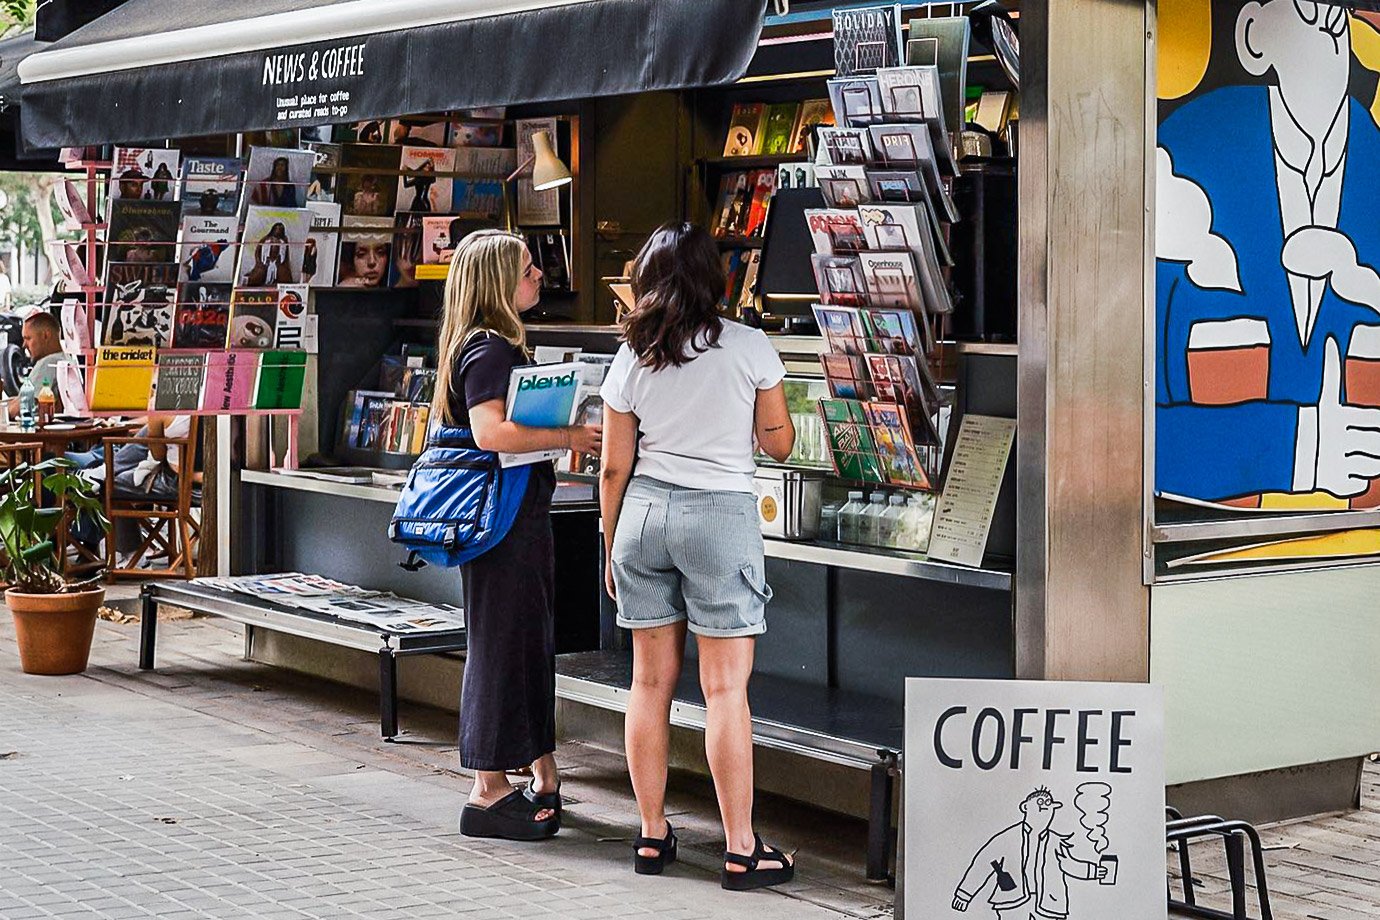 News and Coffee: um lugar de notícias e café em Madri, na Espanha